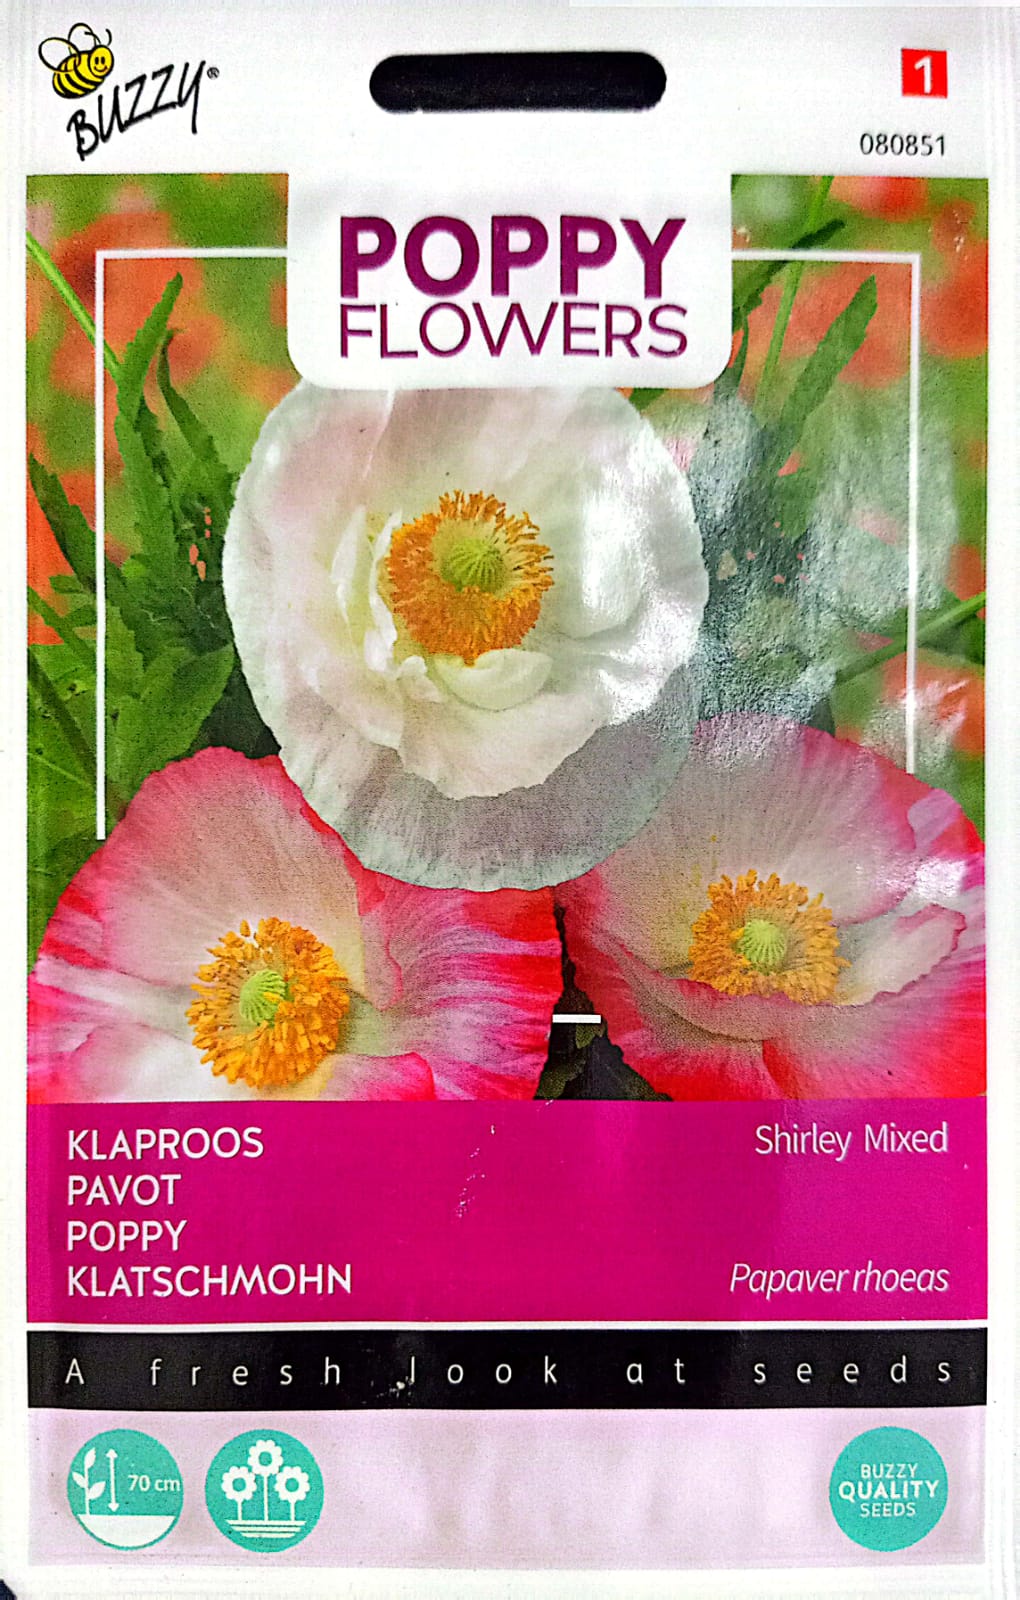 Buzzy Poppy Flower 080851